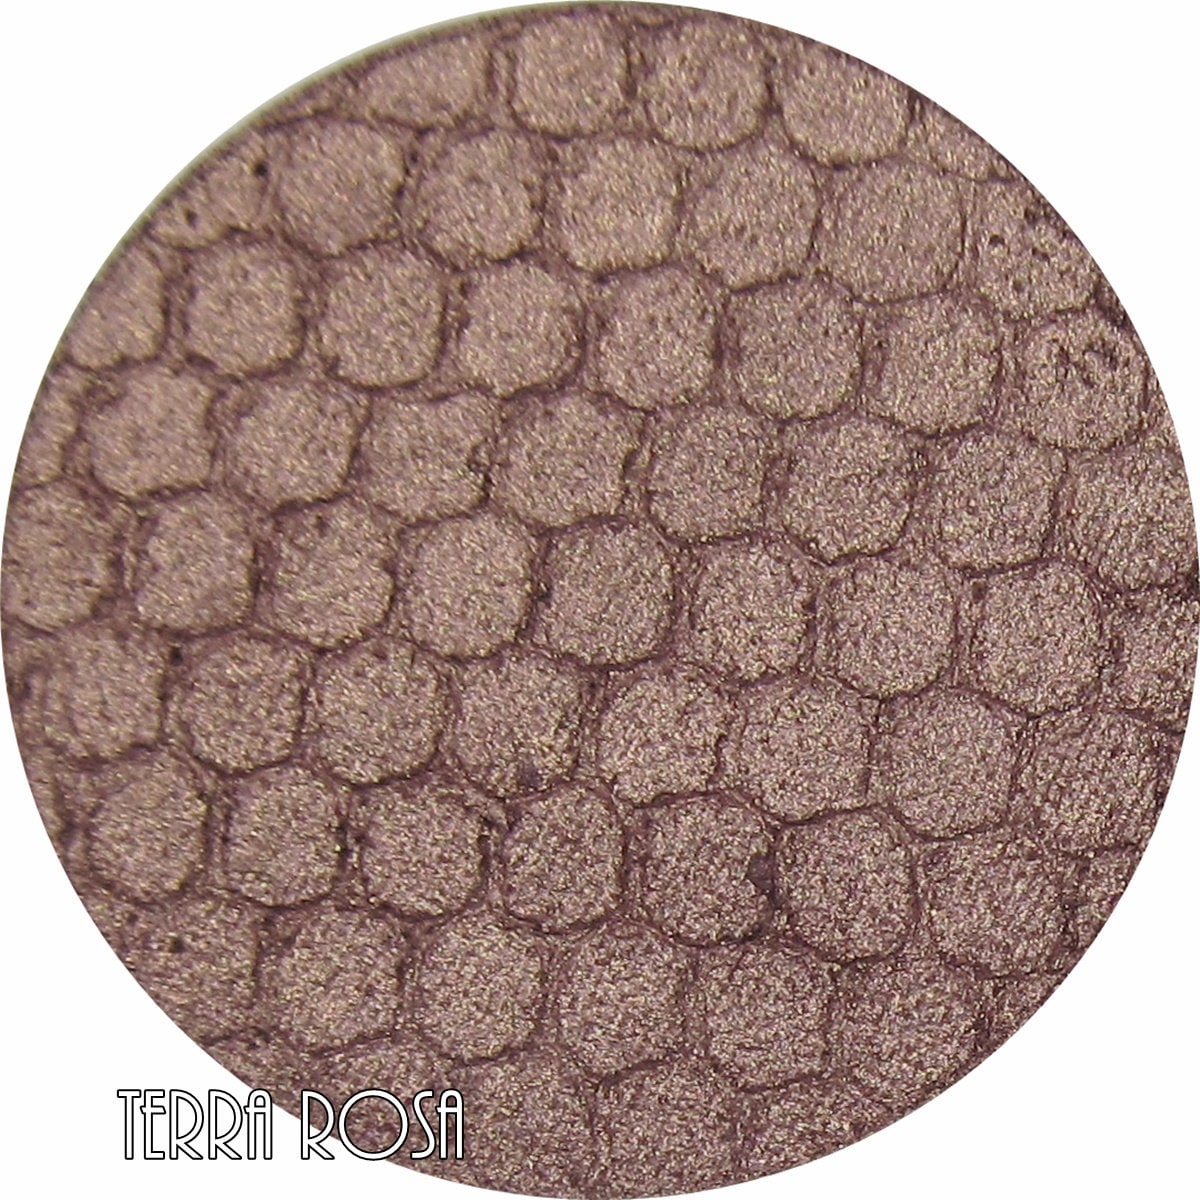 Rose Bronze Pressed Mineral Eyeshadow-Terra Rosa